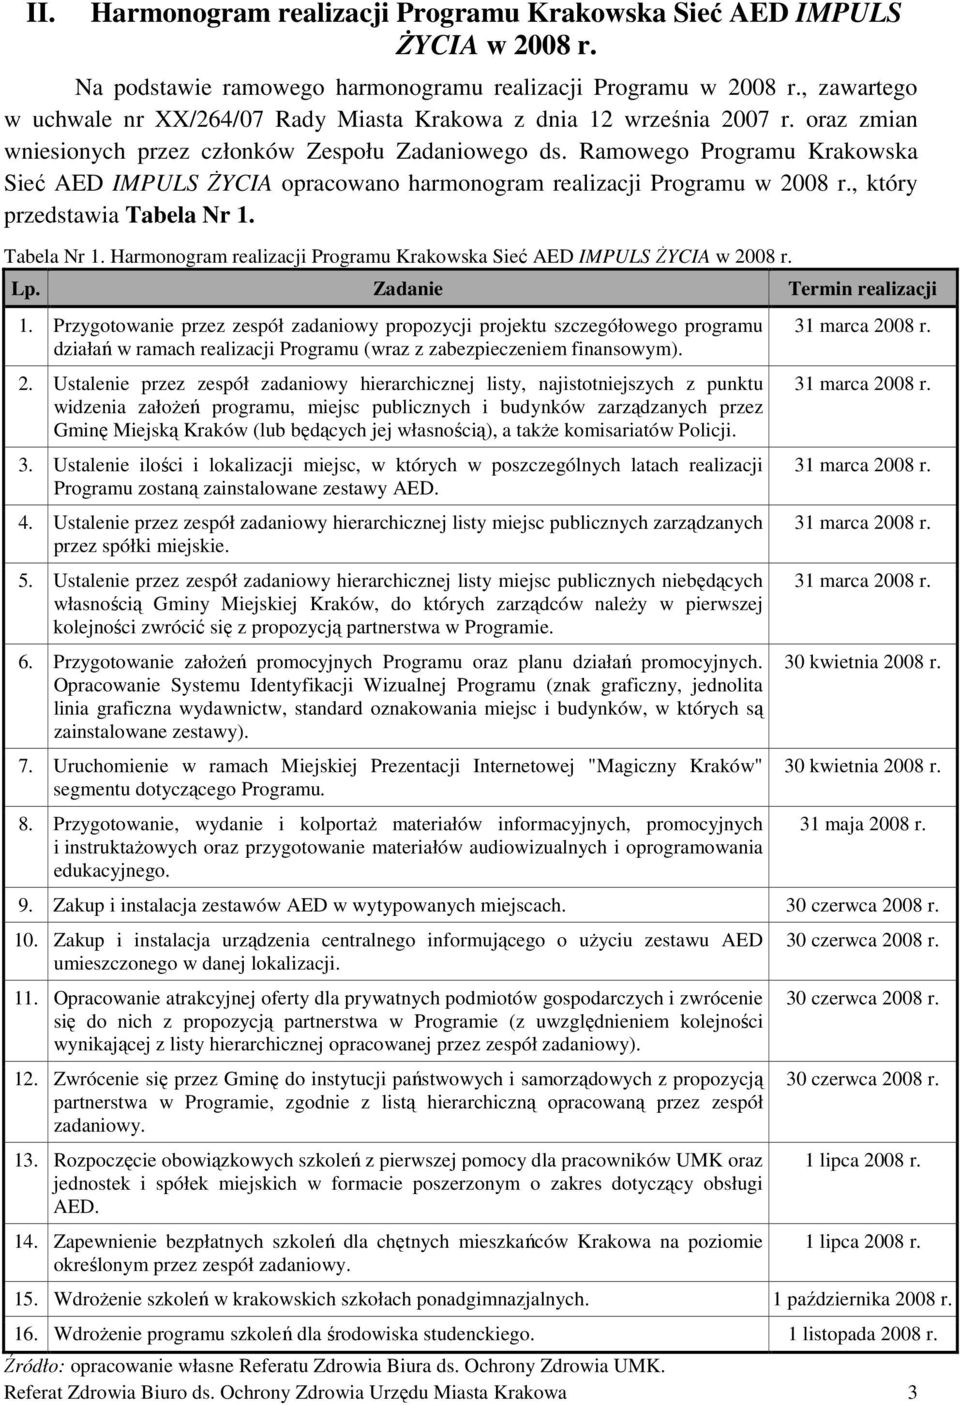 Ramowego Programu Krakowska Sieć AED IMPULS śycia opracowano harmonogram realizacji Programu w 2008 r., który przedstawia Tabela Nr 1.